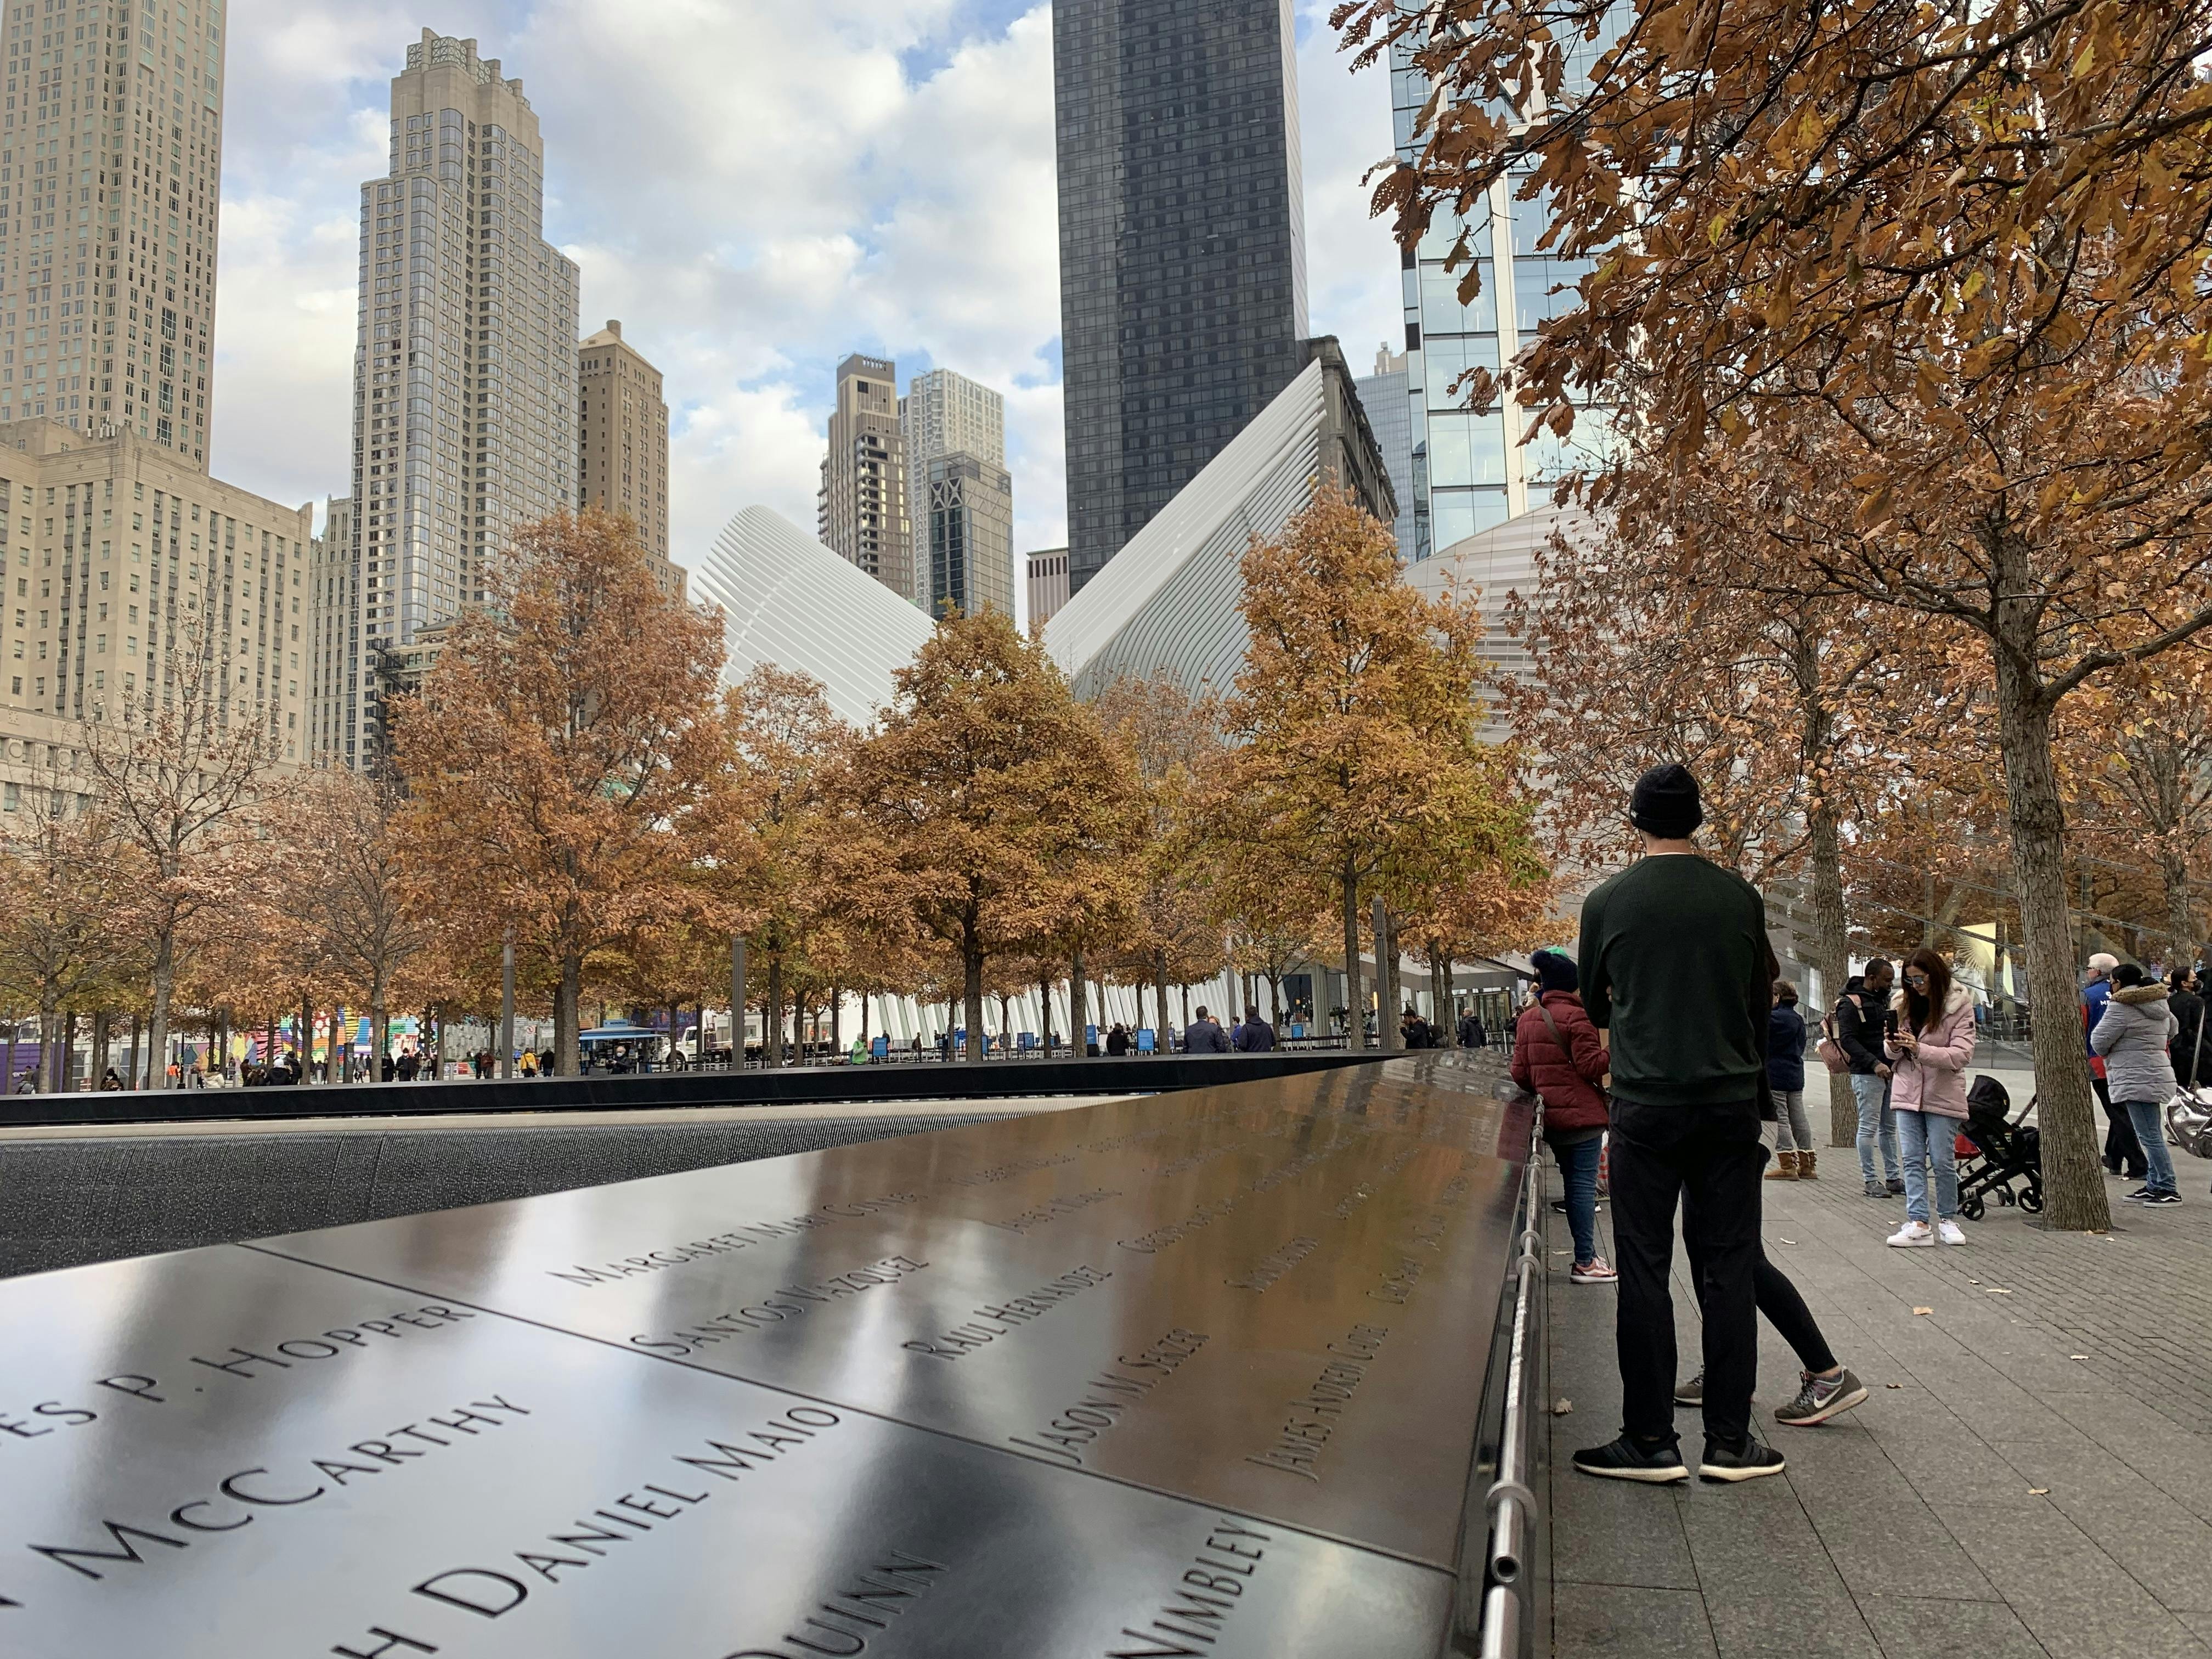 Rundgang durch NYC 9-11 Memorial, Wall Street und Freiheitsstatue